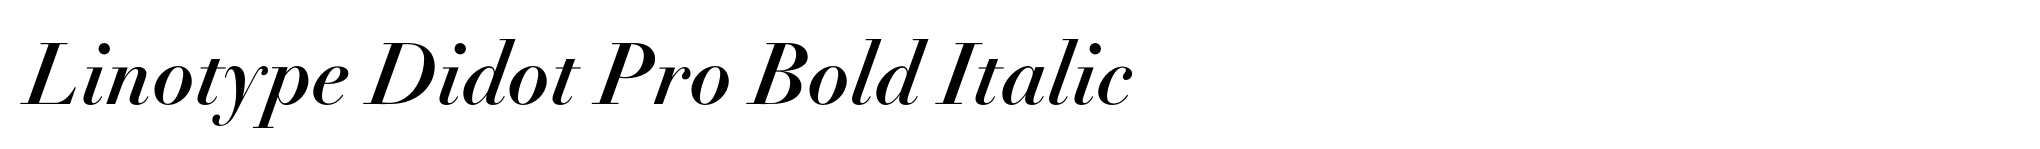 Linotype Didot Pro Bold Italic image